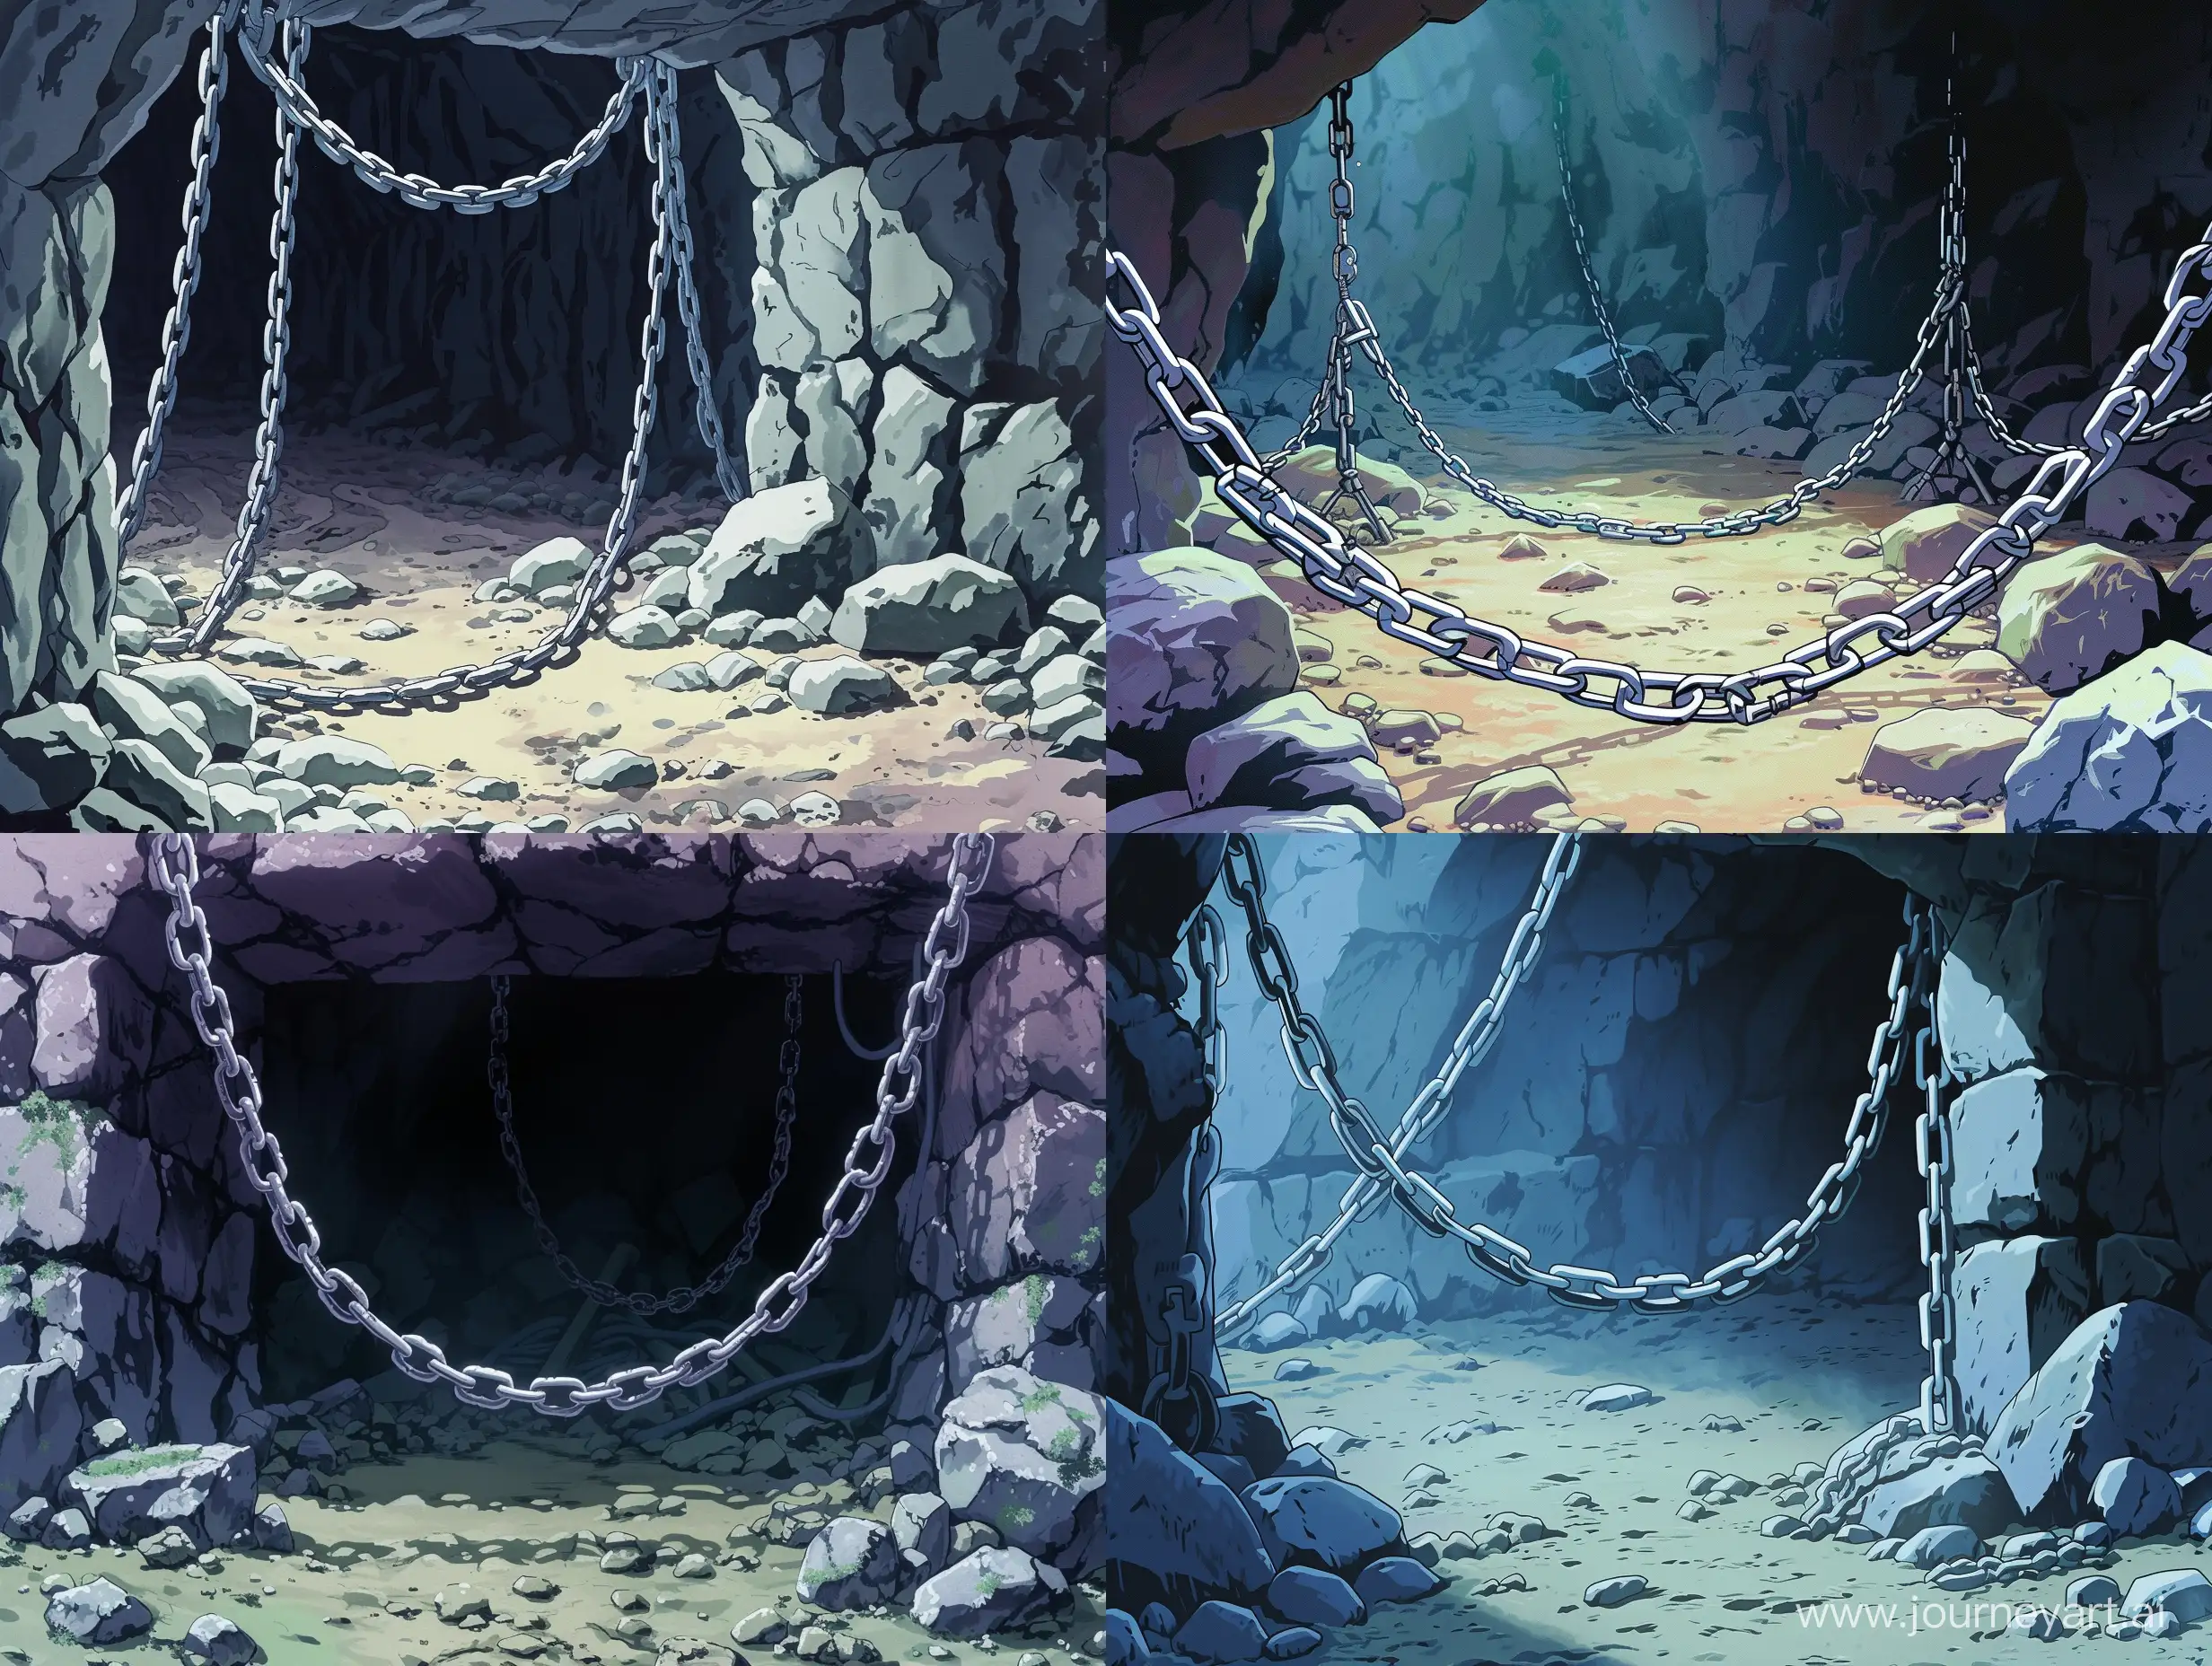 Решетка в пещере, цепи, камни, пещера, кандалы, аниме стиль